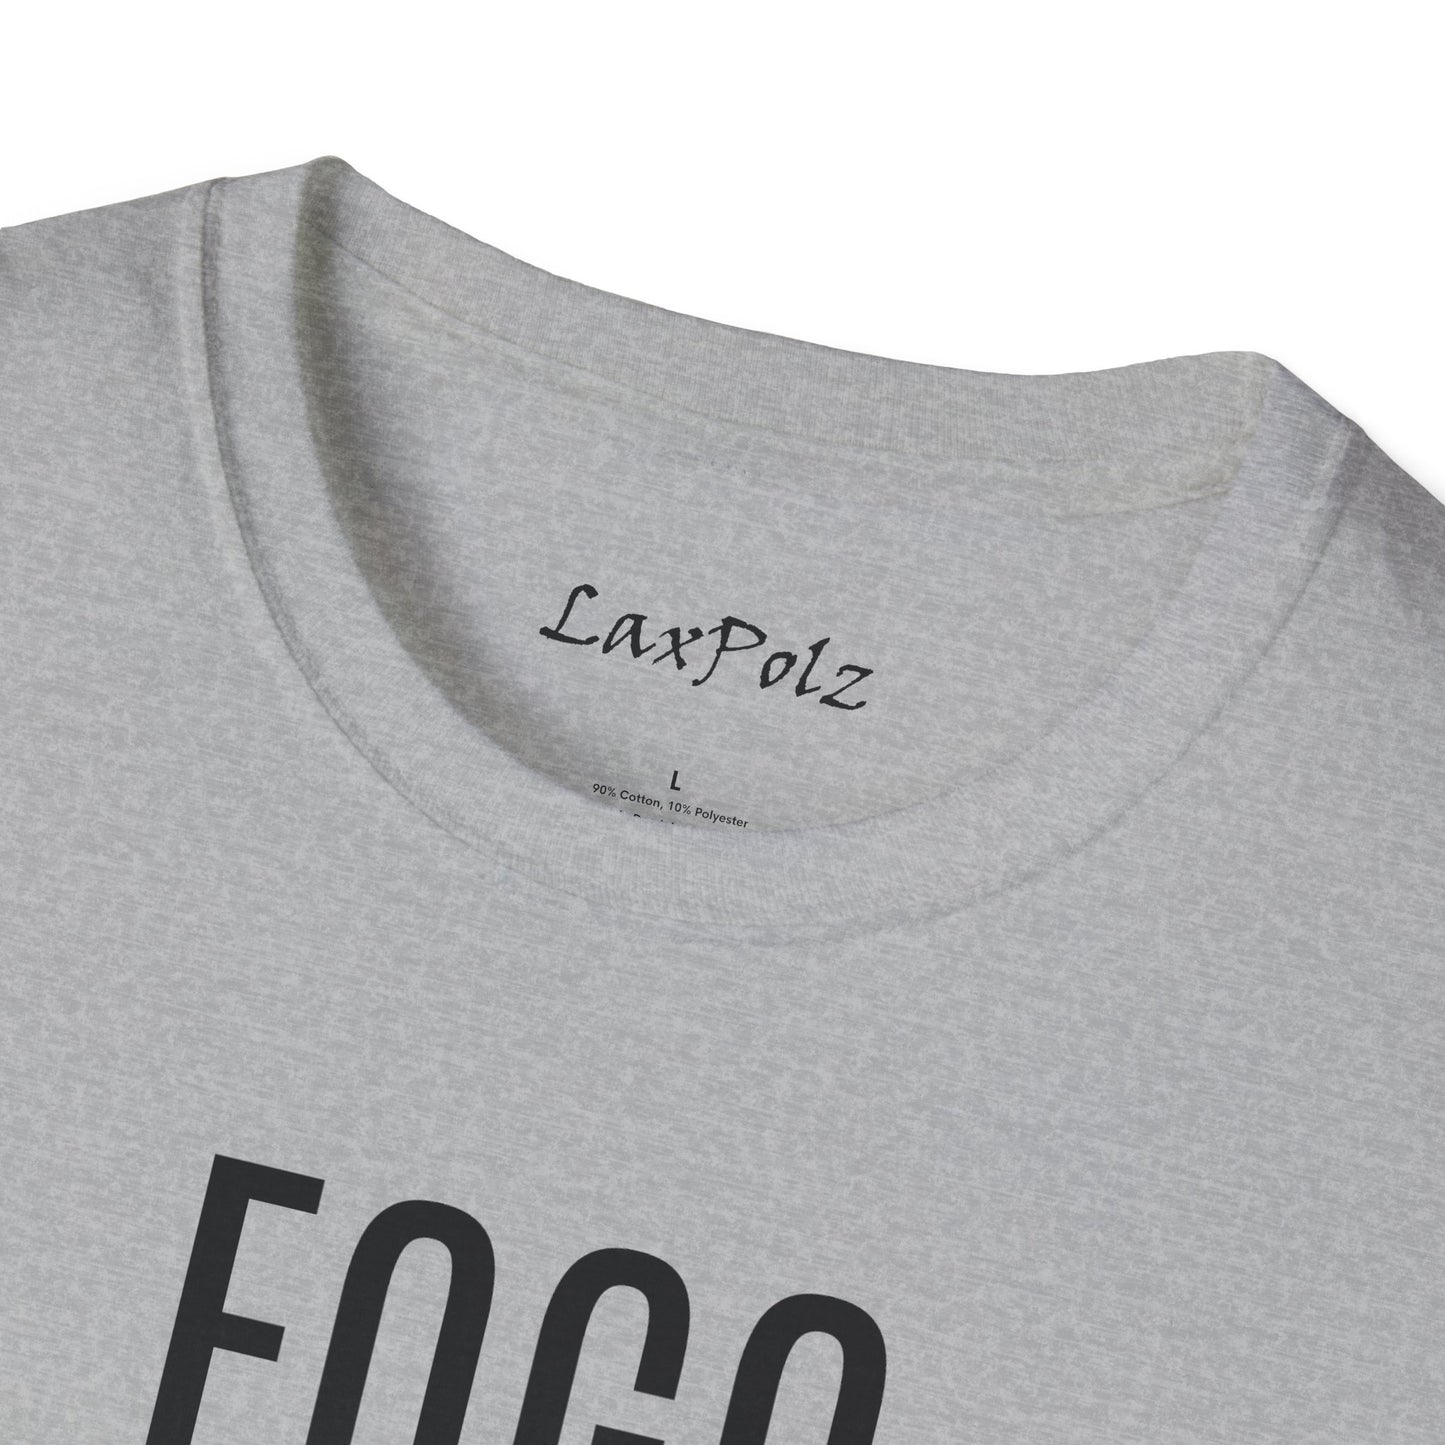 FOGO FOSHO Softstyle T-Shirt